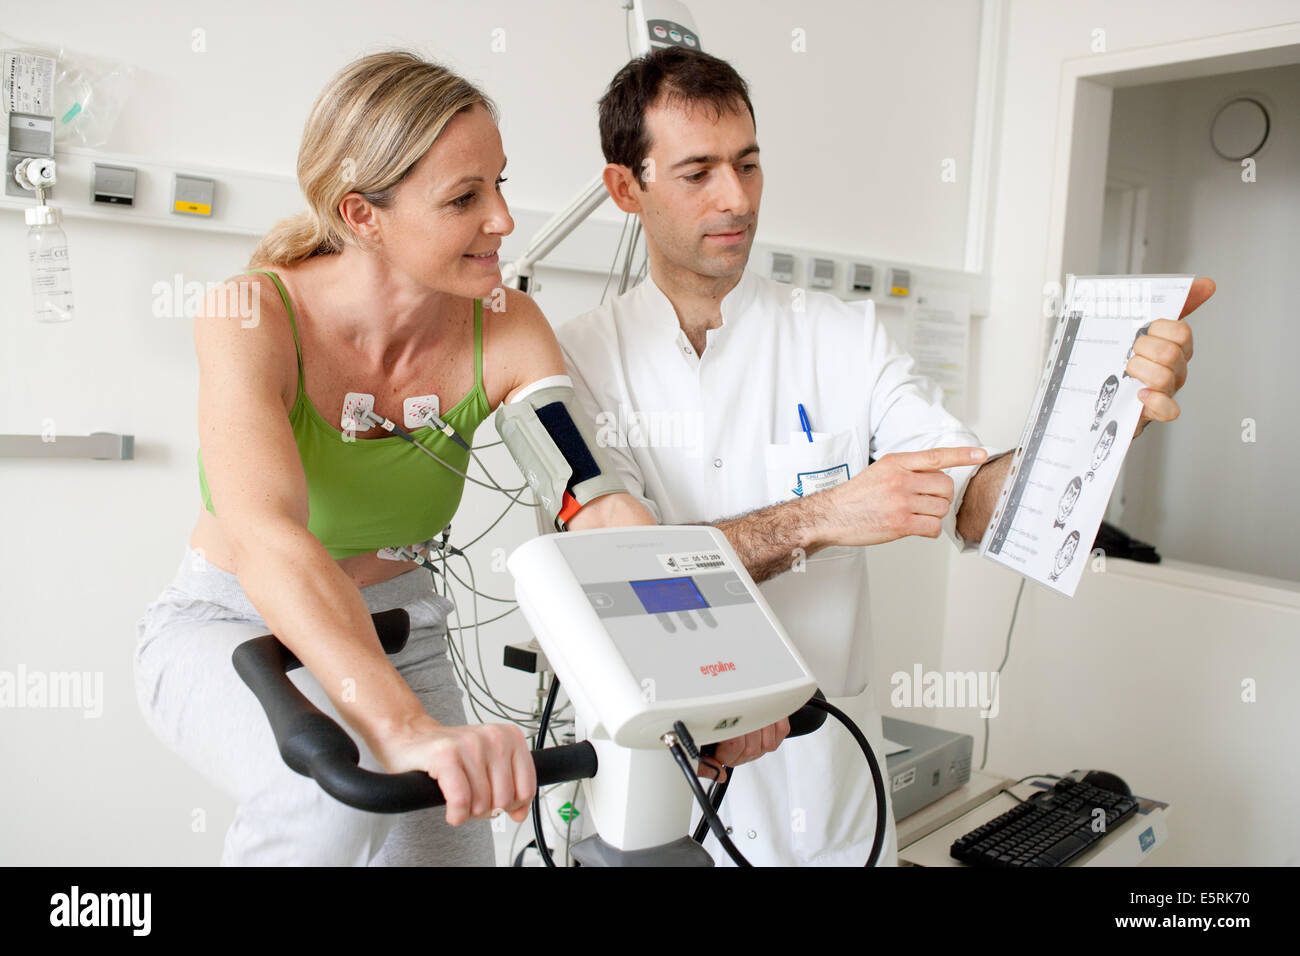 Femme de faire des exercices de réadaptation cardiaques sur ergometric location, Limoges, France l'hôpital. Banque D'Images